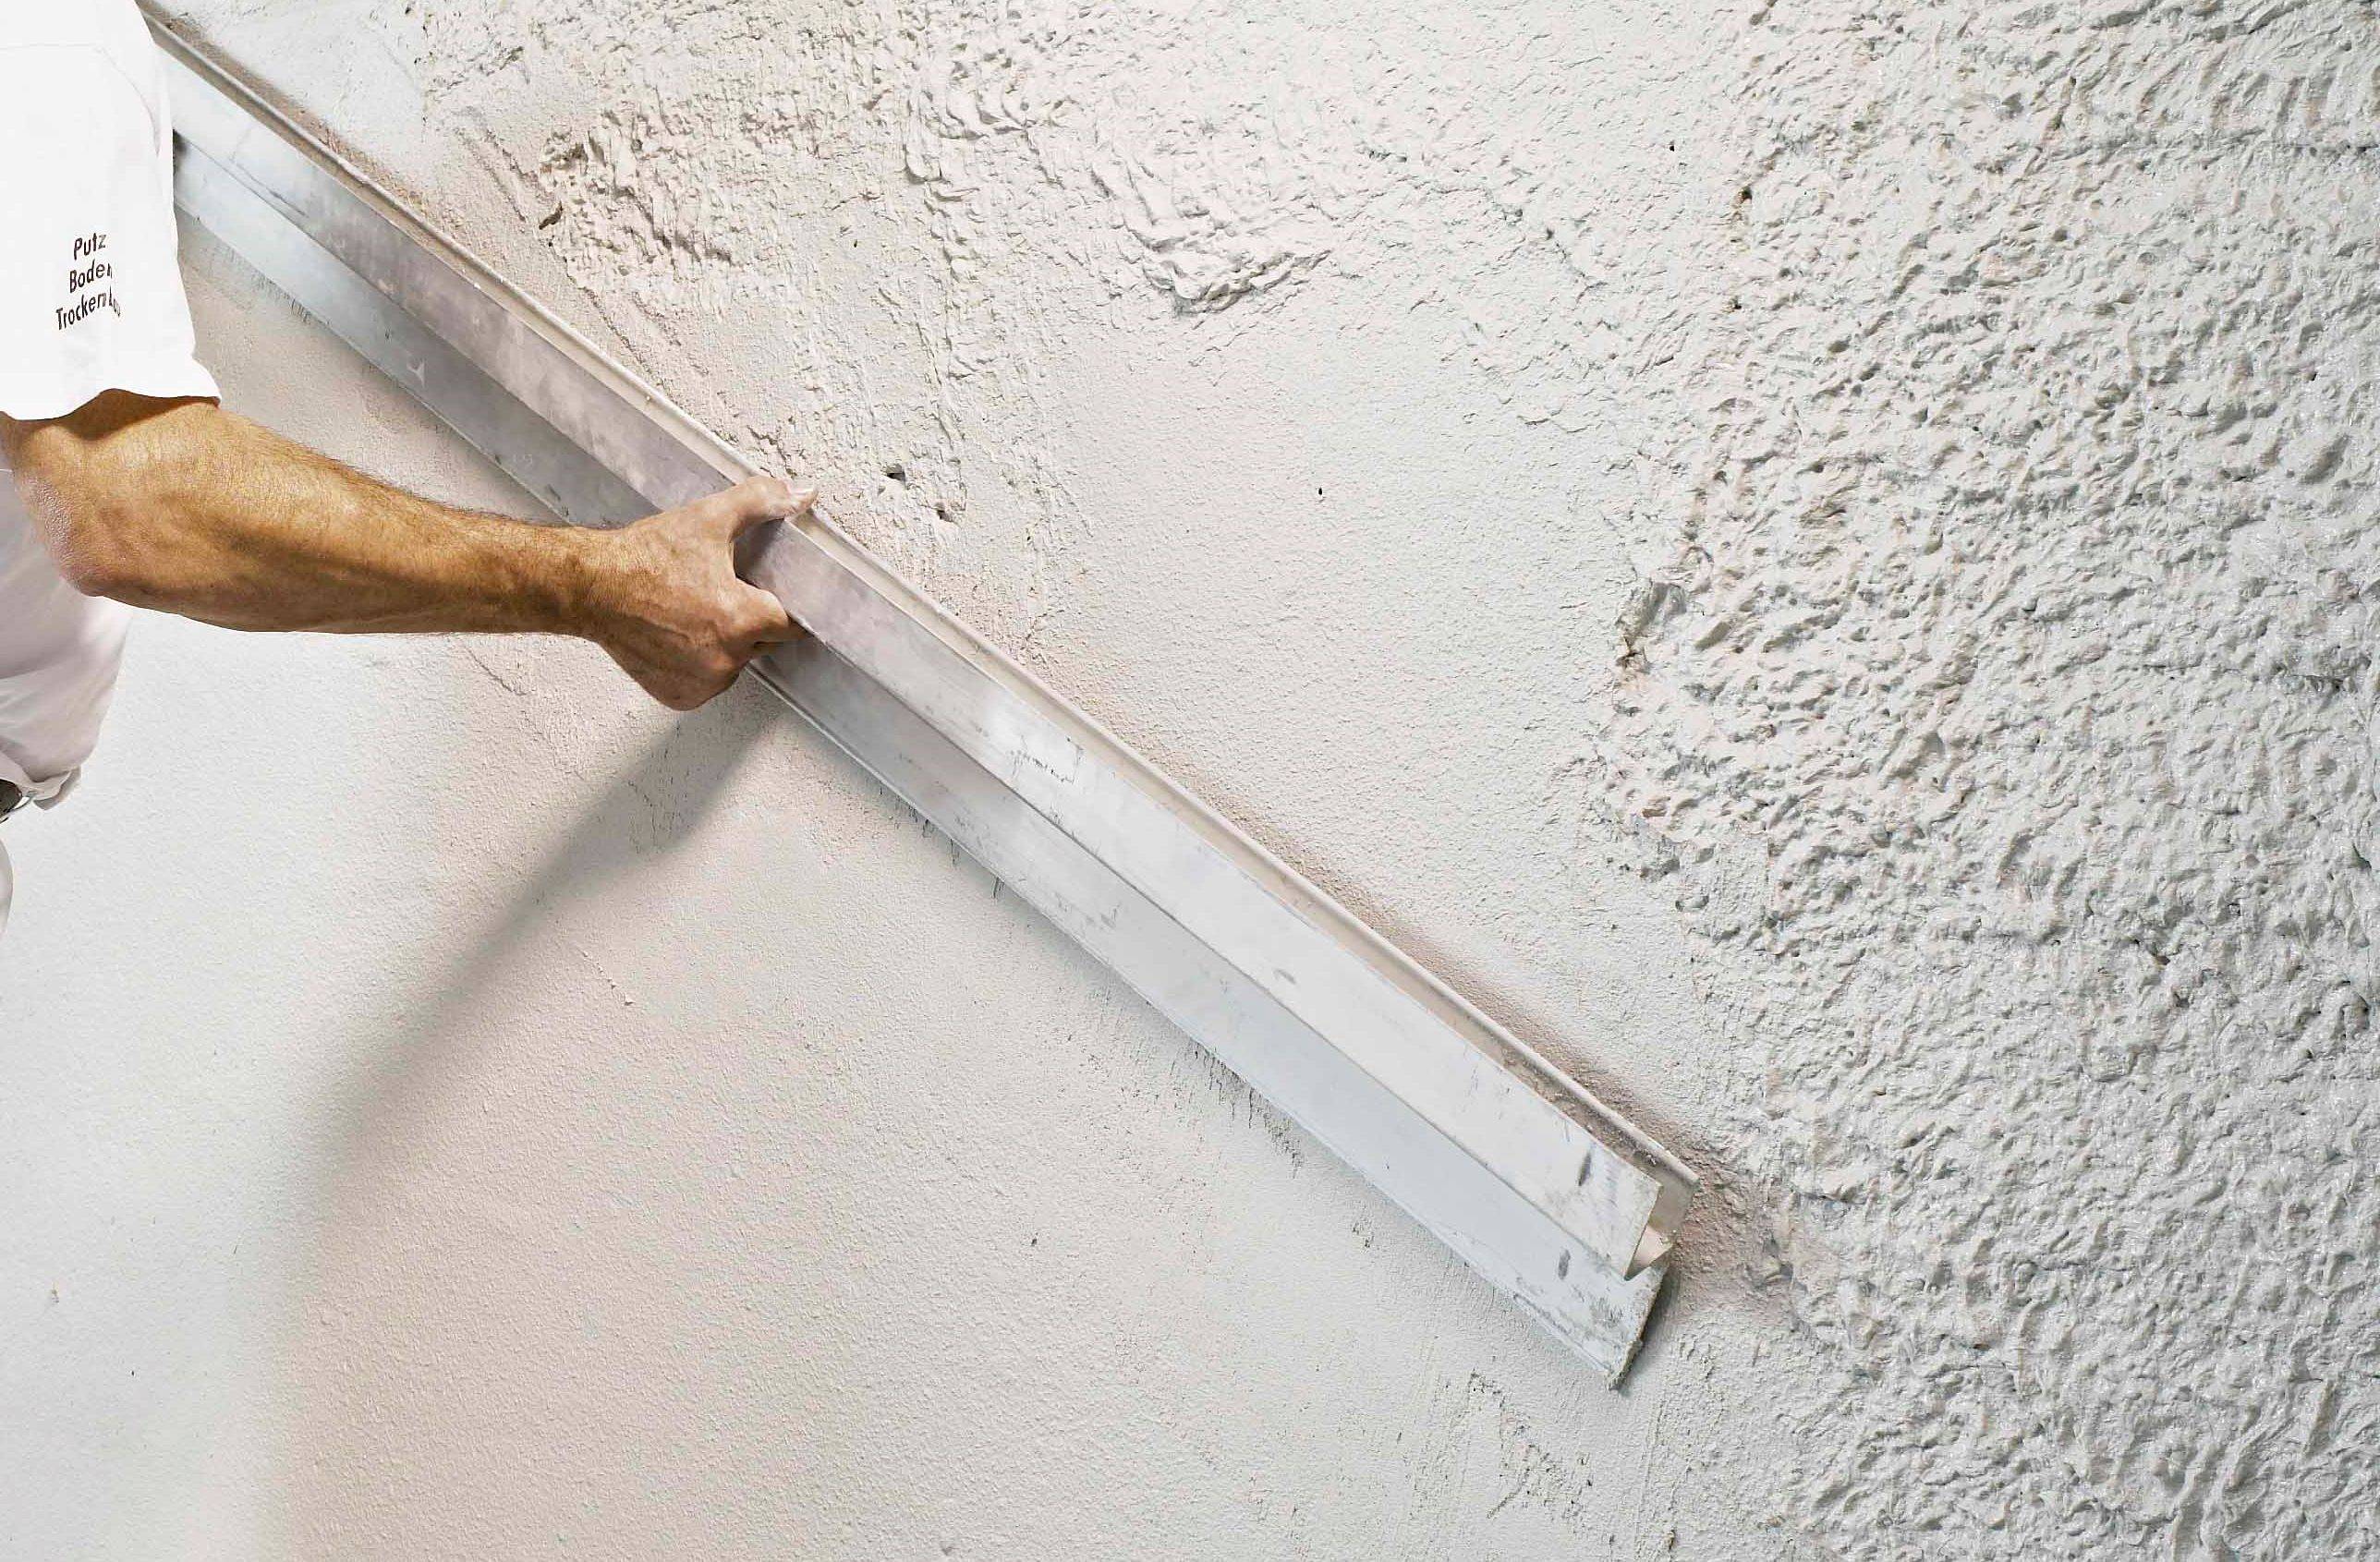 Гипсокартон или штукатурка: что лучше и дешевле для стен?